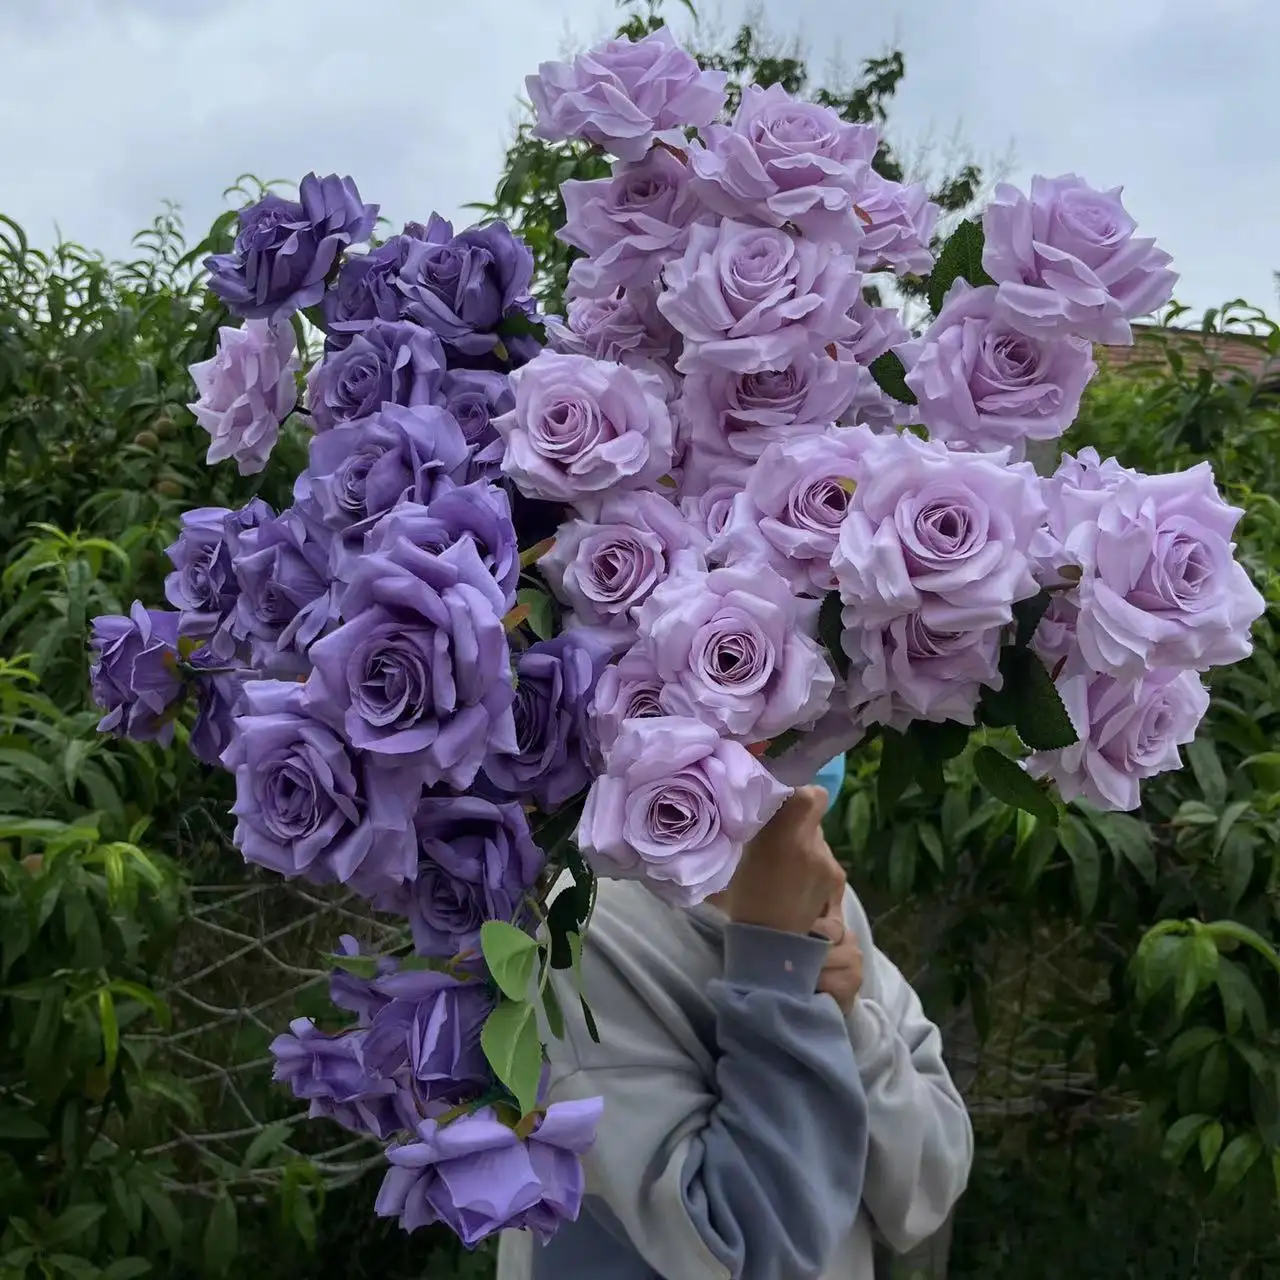 25.5" इंच 65 सेमी शादी की सजावट के गुलाब 3 सिर रेशम शादी के गुलाब कृत्रिम फूल के तने बैंगनी गुलाब